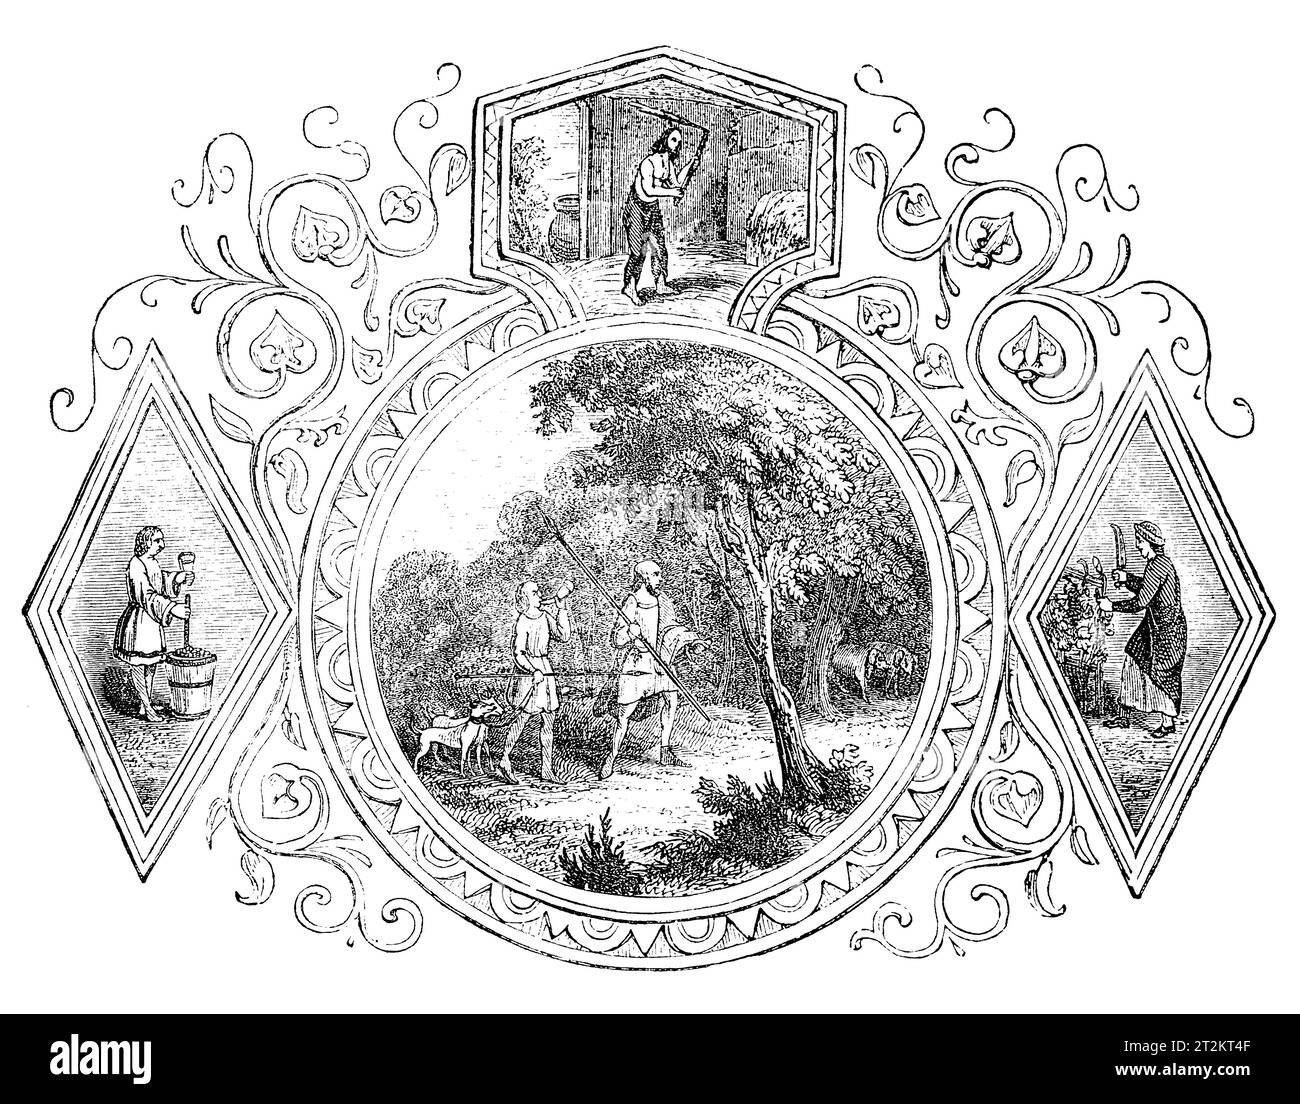 Emblemas sajones del mes de septiembre. Ilustración en blanco y negro de la 'Vieja Inglaterra' publicada por James Sangster en 1860. Foto de stock